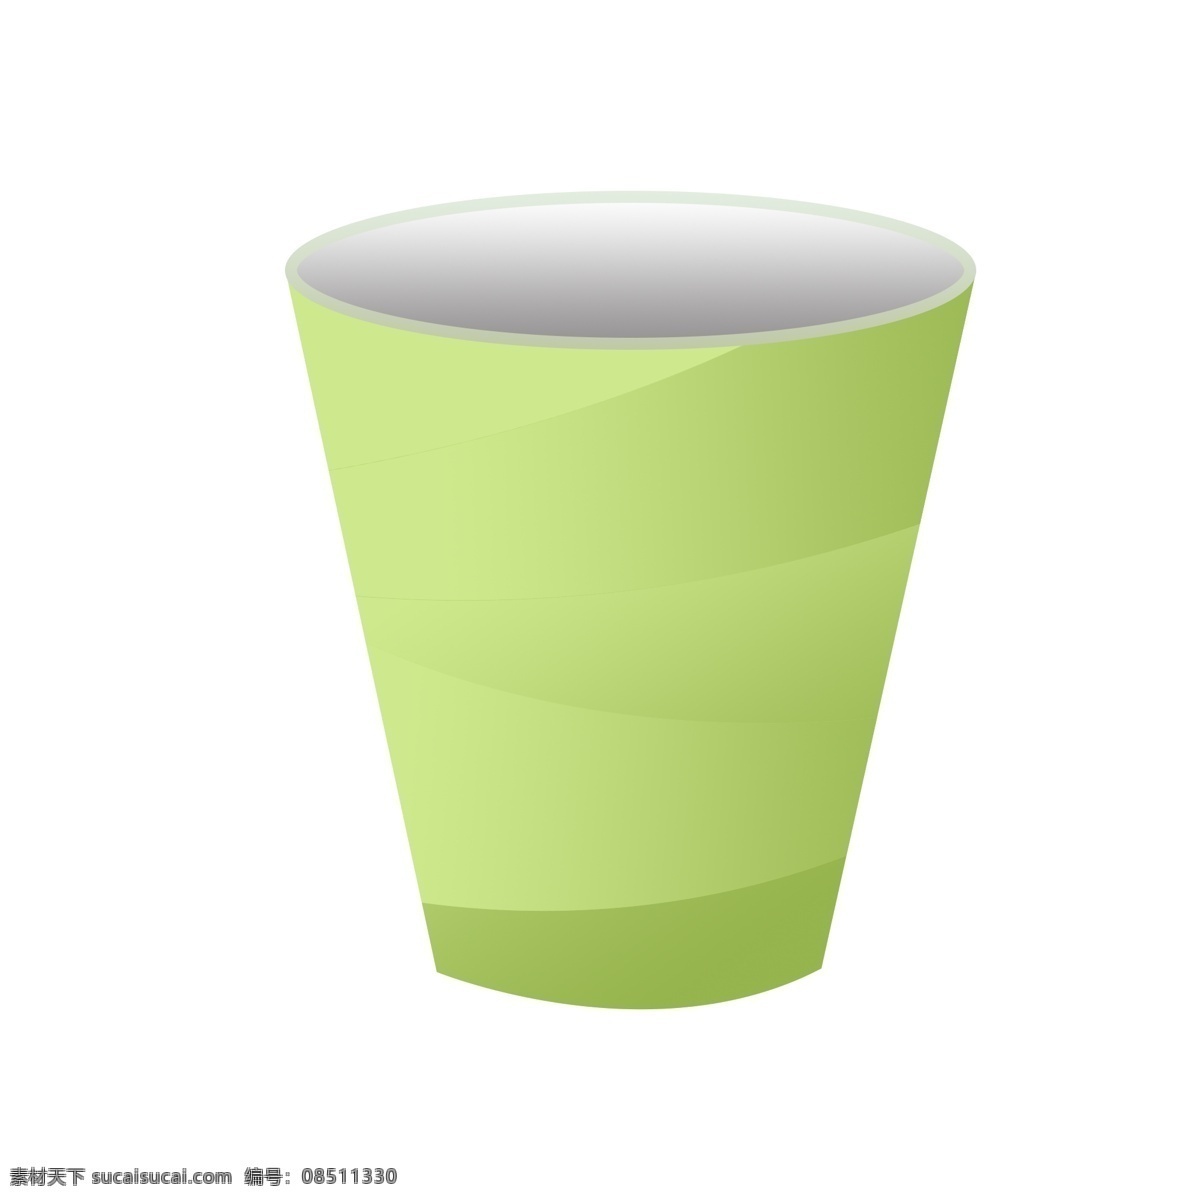 一次性杯子 杯子 杯子元素 杯子素材 塑料杯 可乐杯 奶茶杯 奶茶元素 奶茶素材 纸杯 纸杯元素 纸杯素材 绿色纸杯 绿色装饰 装饰元素 装饰图案 分层